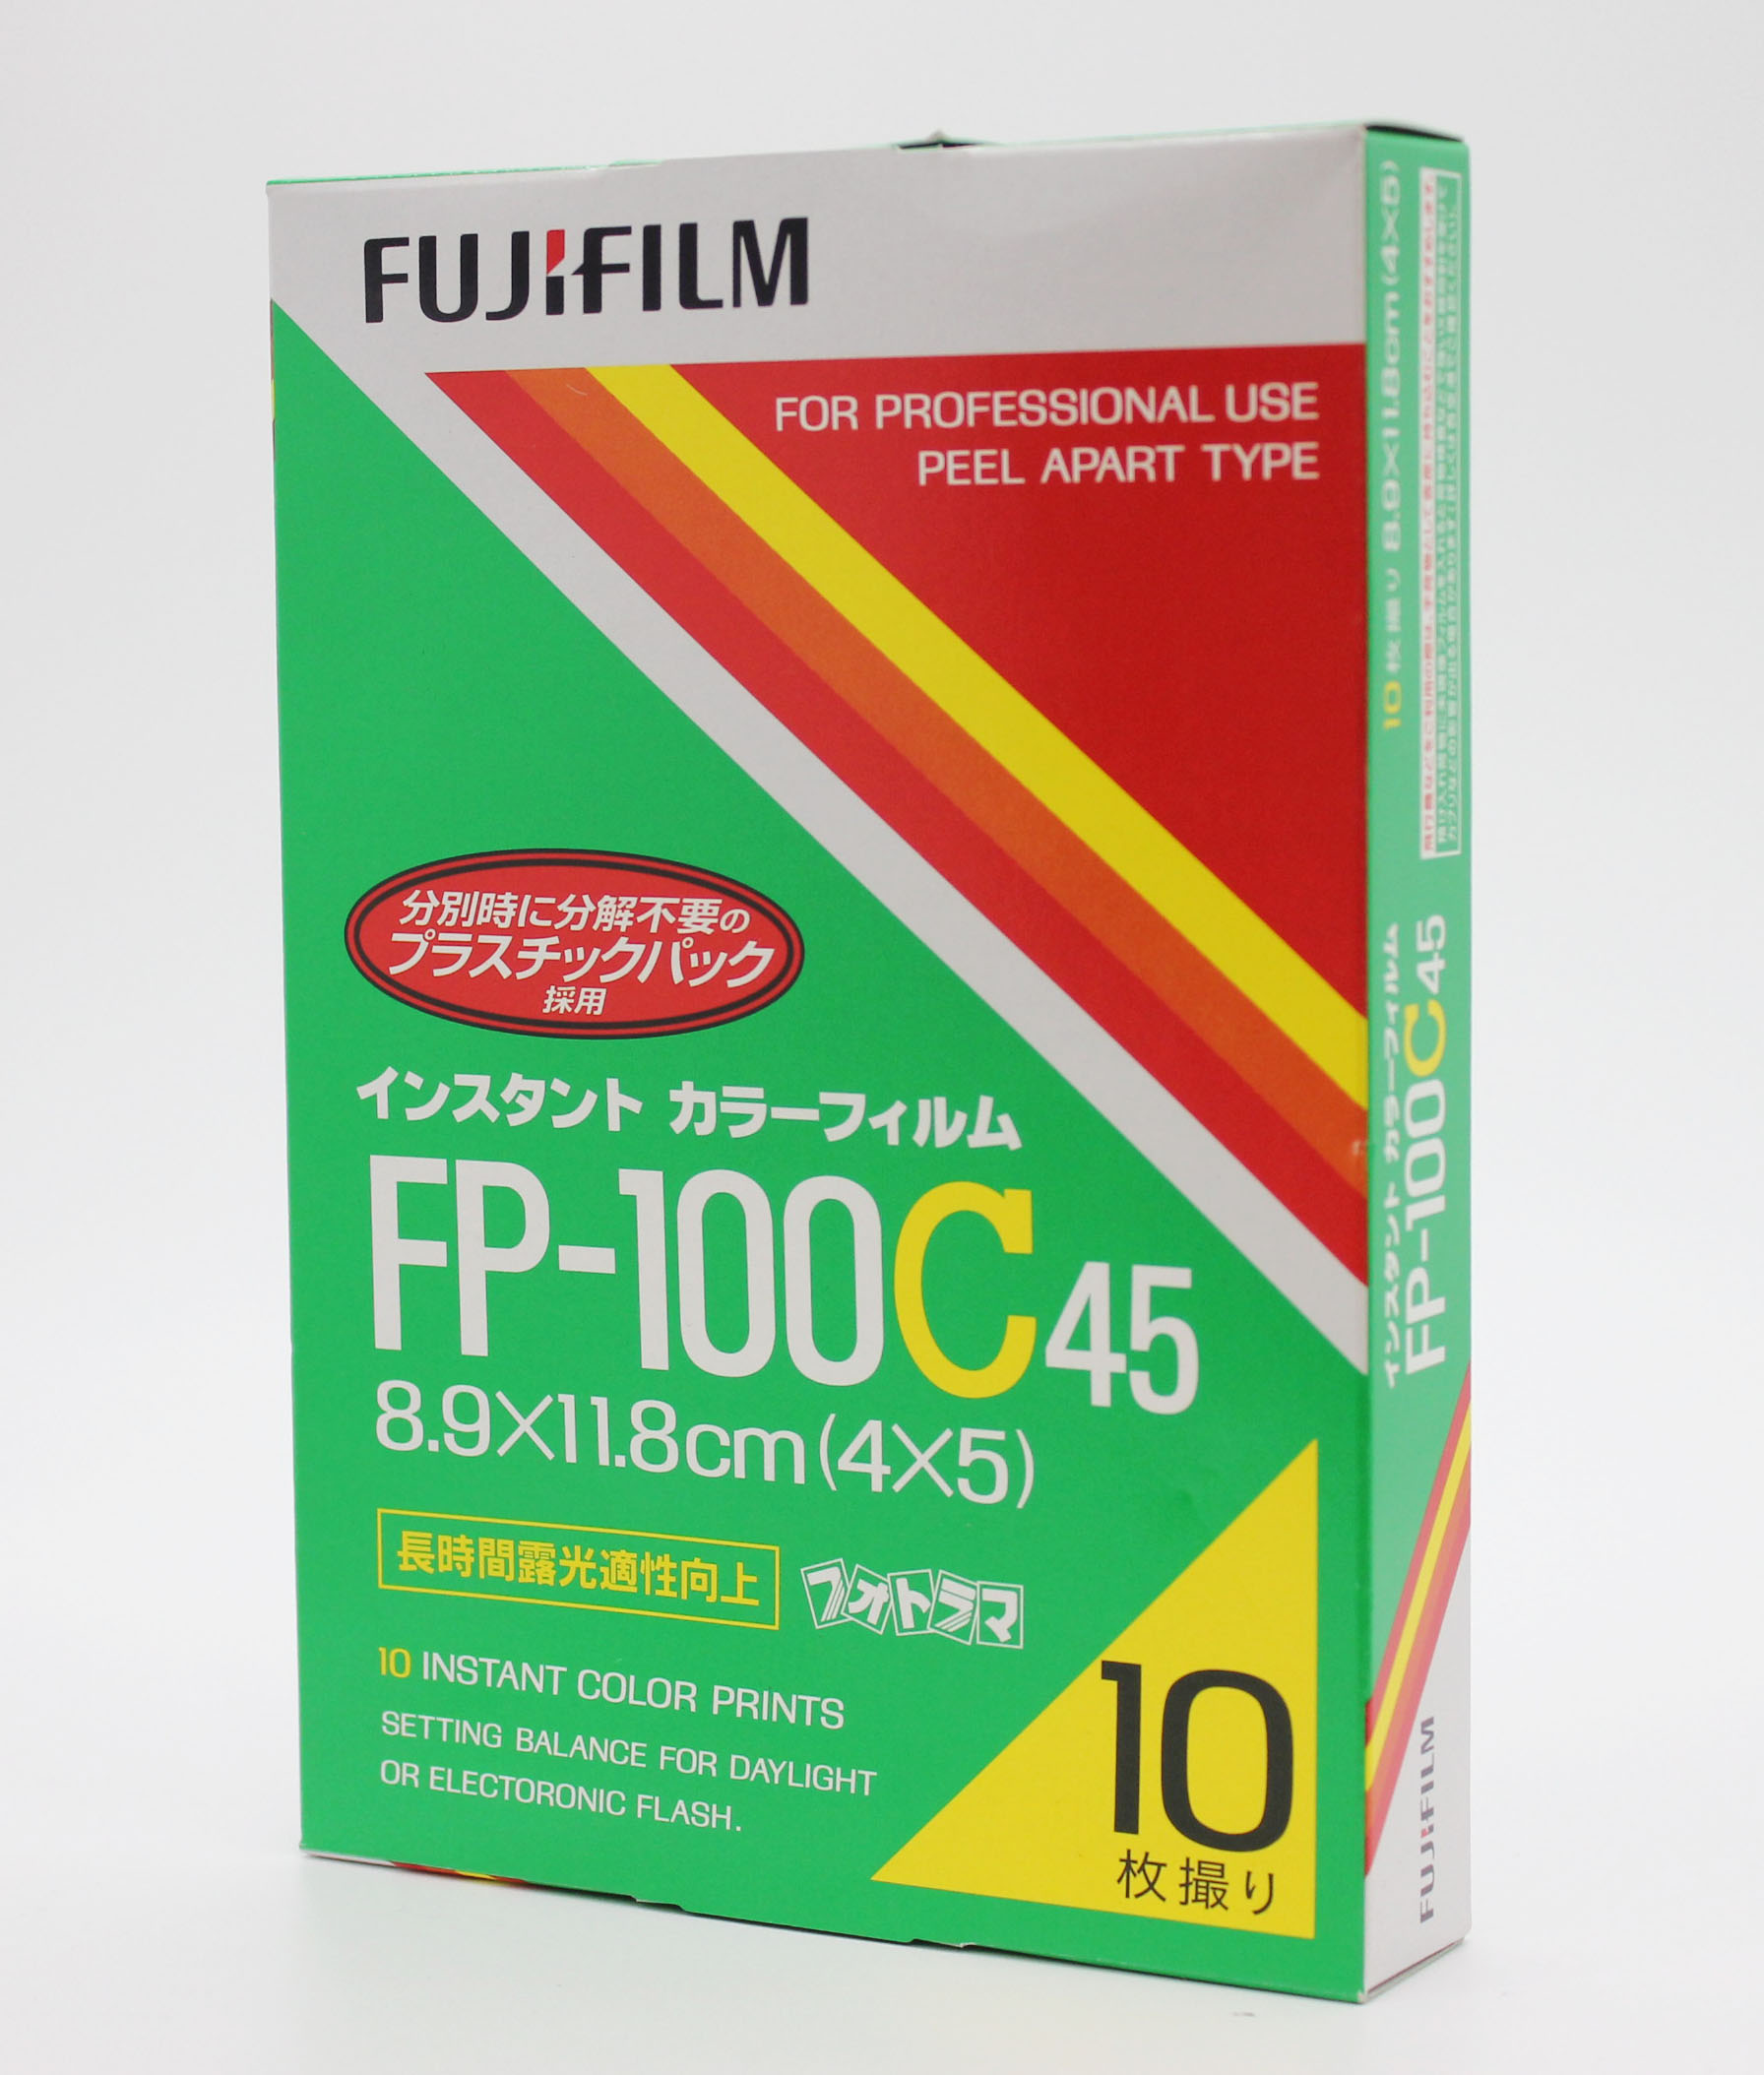  Fuji Fujifilm FP-100C45 4x5 8.9x11.8cm Instant Color Film (EXP 10/2009) Photo 0